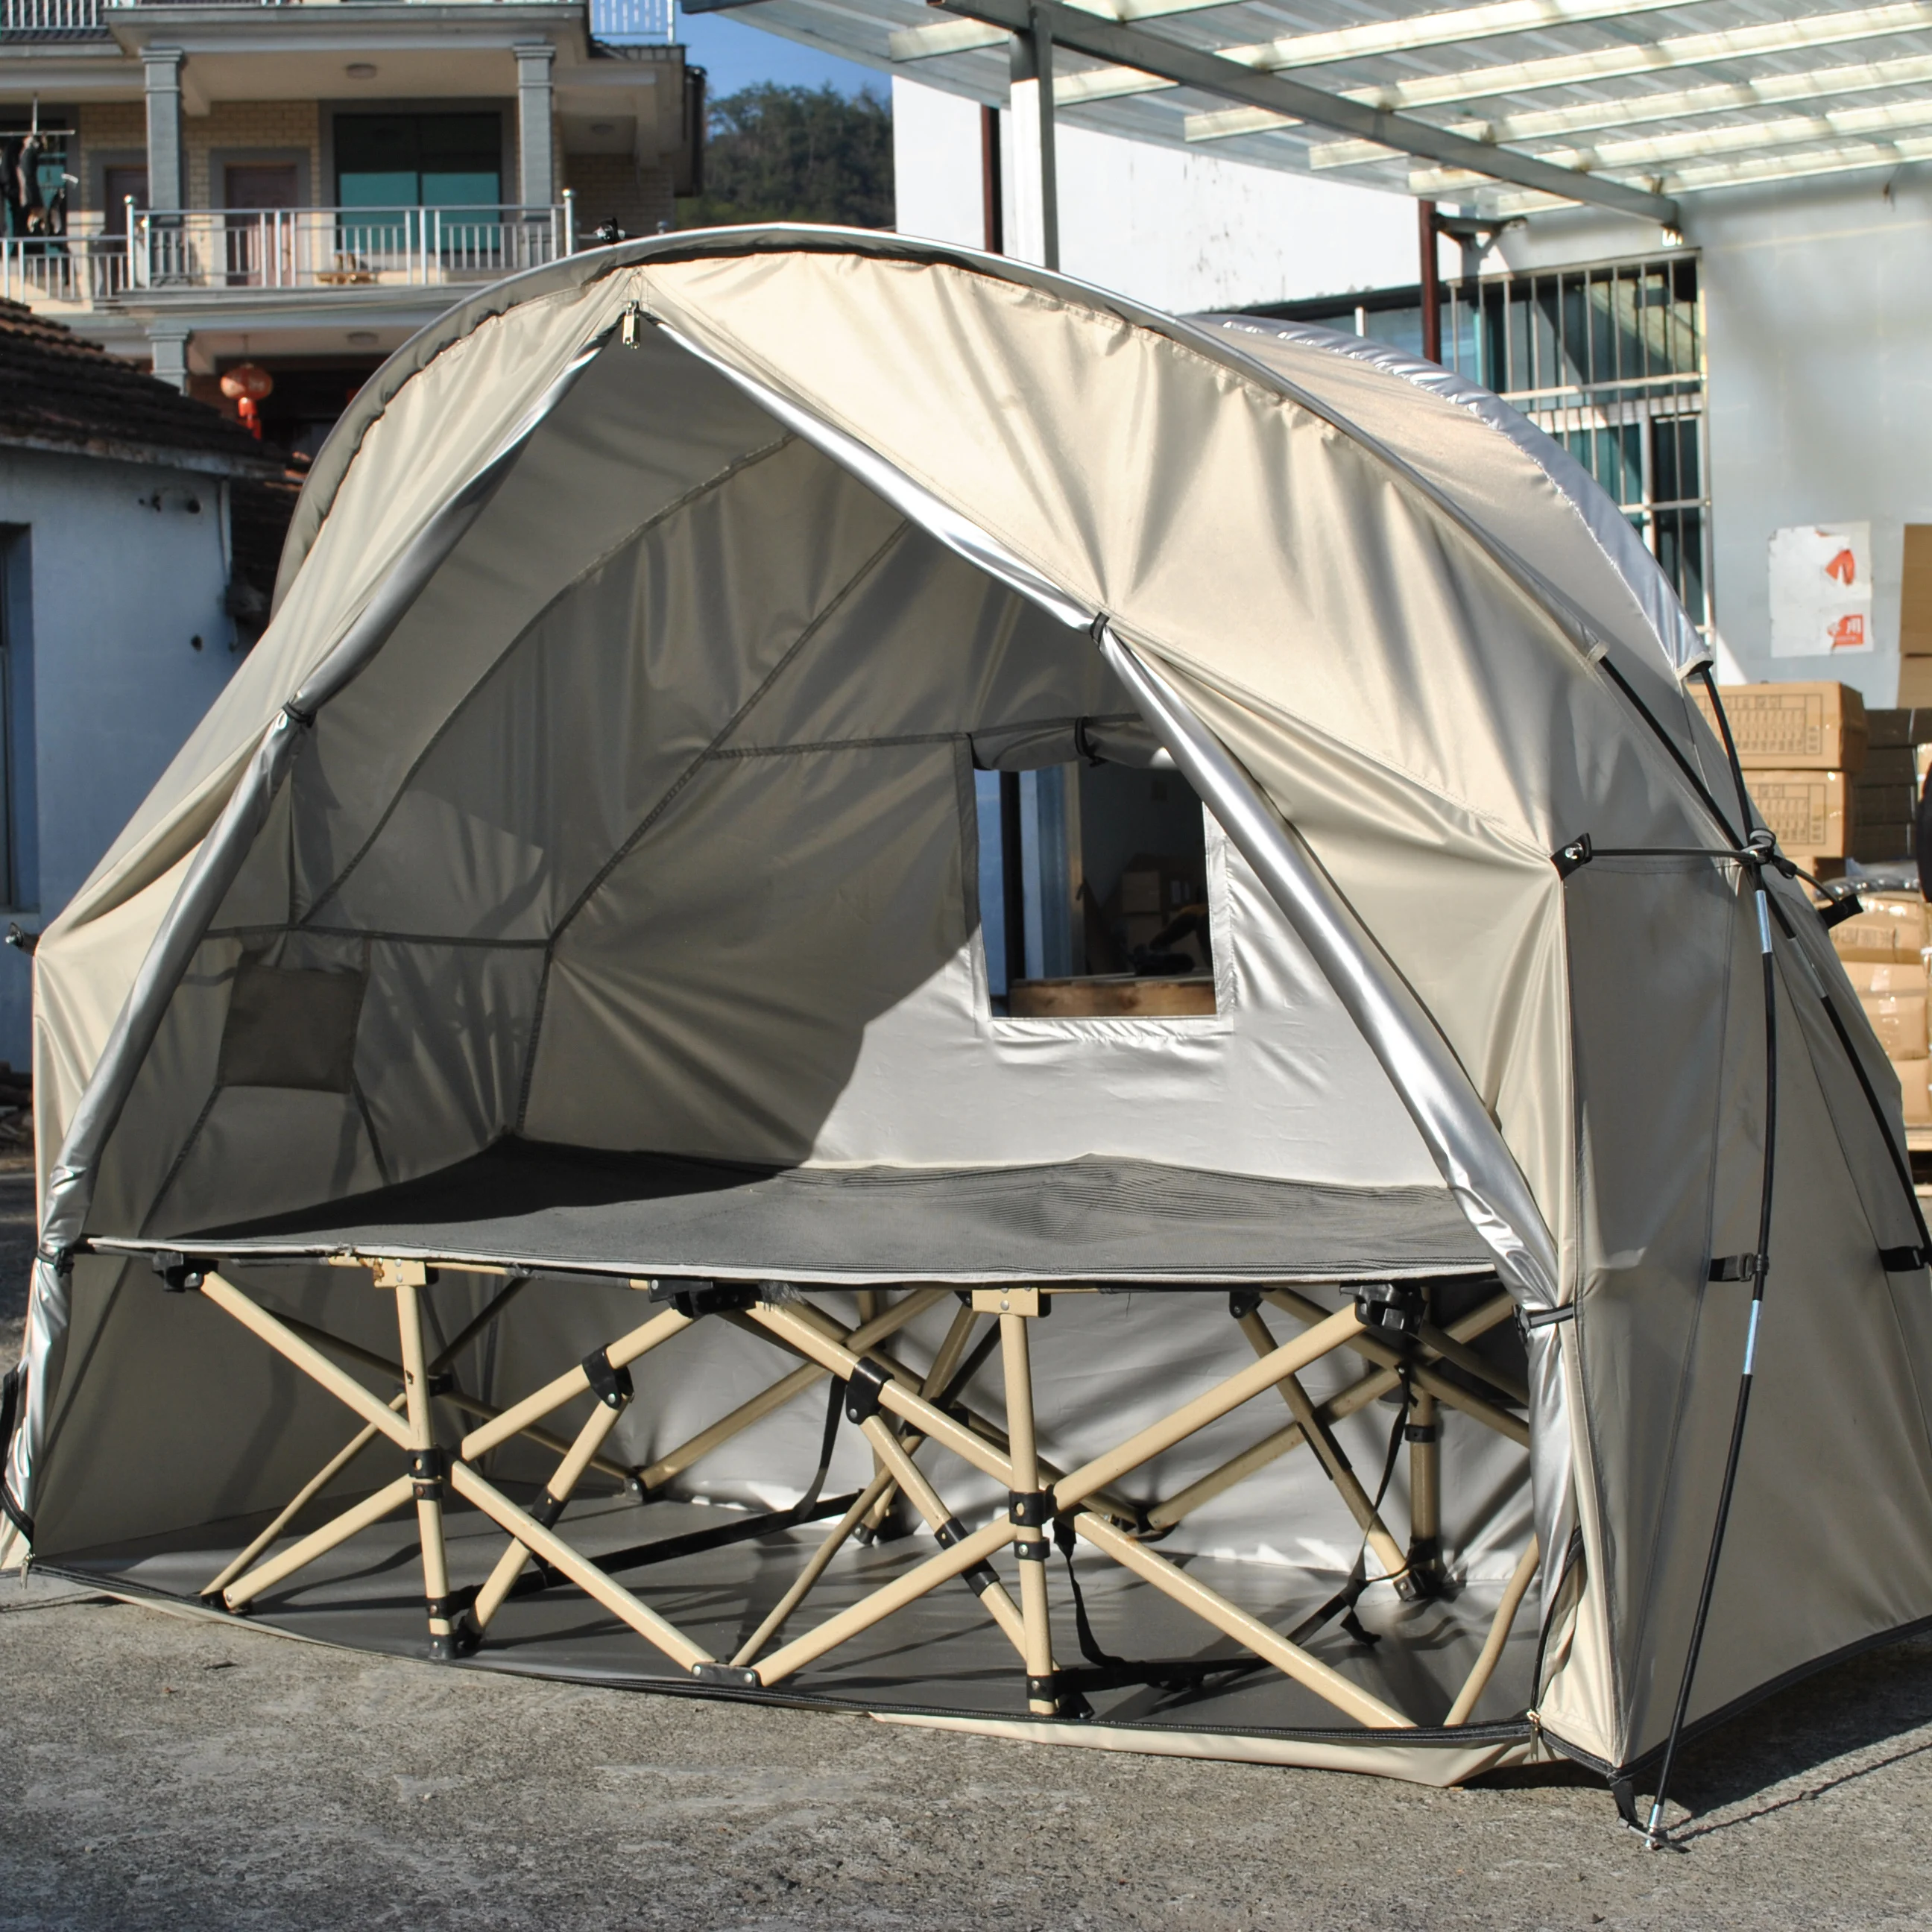 Прочная палатка для детской кроватки Одиночная палатка для кемпинга, водонепроницаемая легкая теплая палатка 4000 мм. В комплект не входит детская кроватка